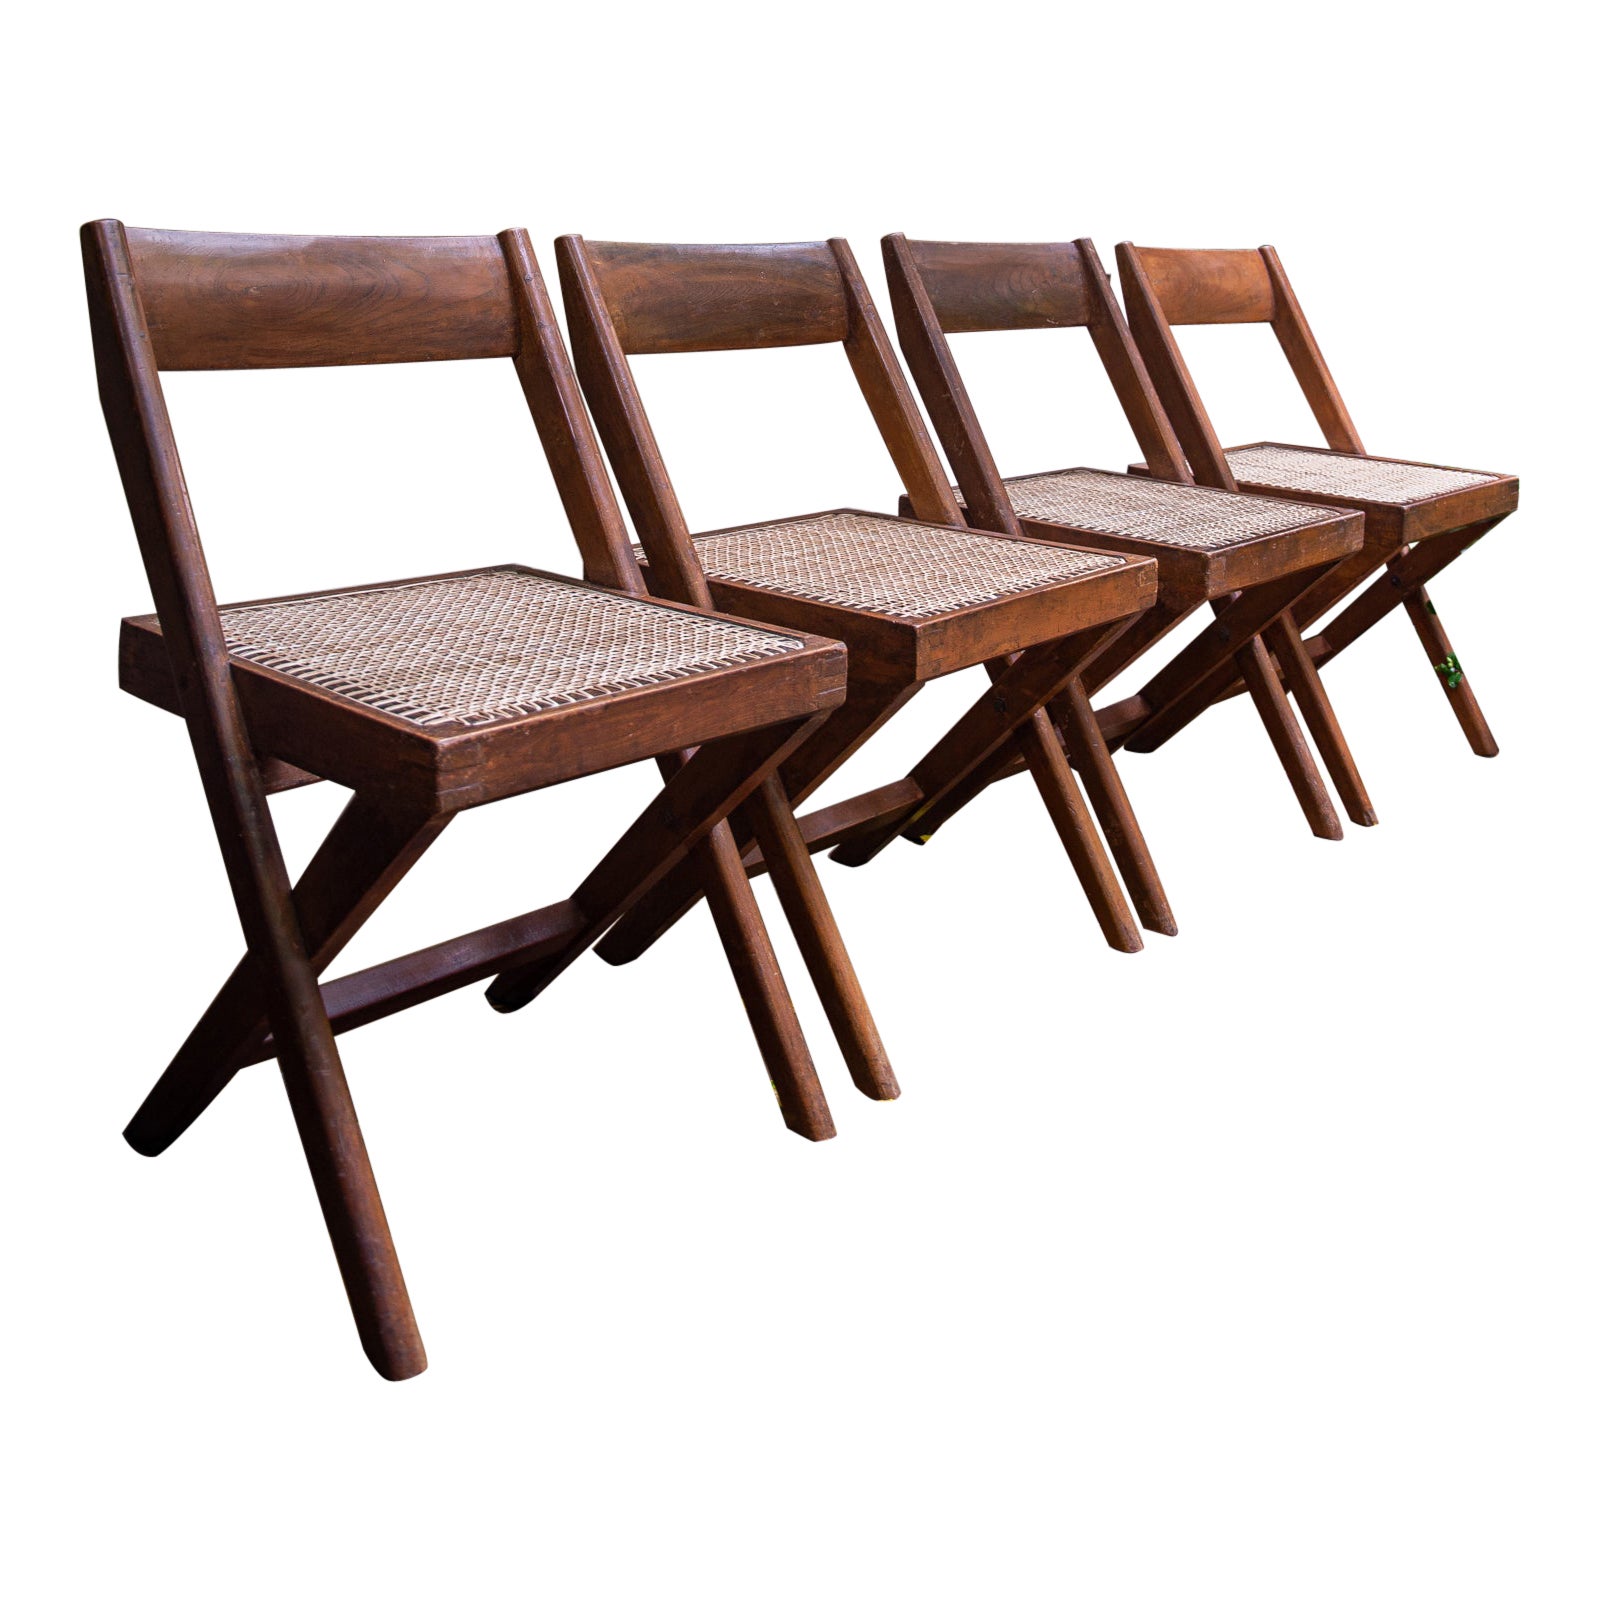 Quatre chaises à cadre en forme de X de Pierre Jeanneret & Eulie Chowdhury, Chandigarh, Inde, 1959